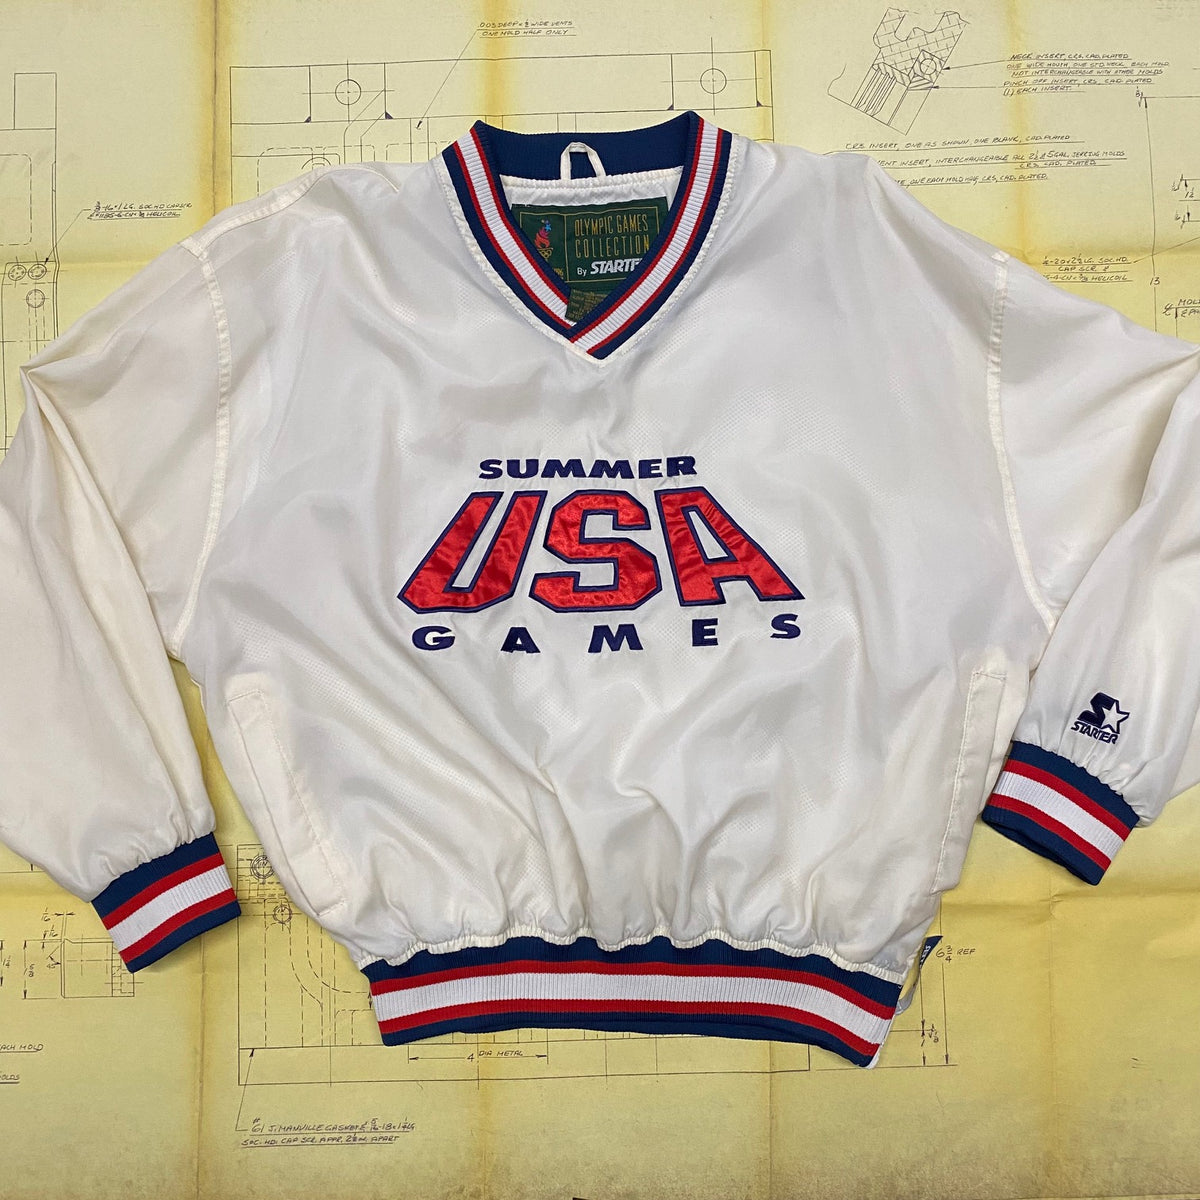 Vintage Cleveland Indians Chalk Line Jacket Size L